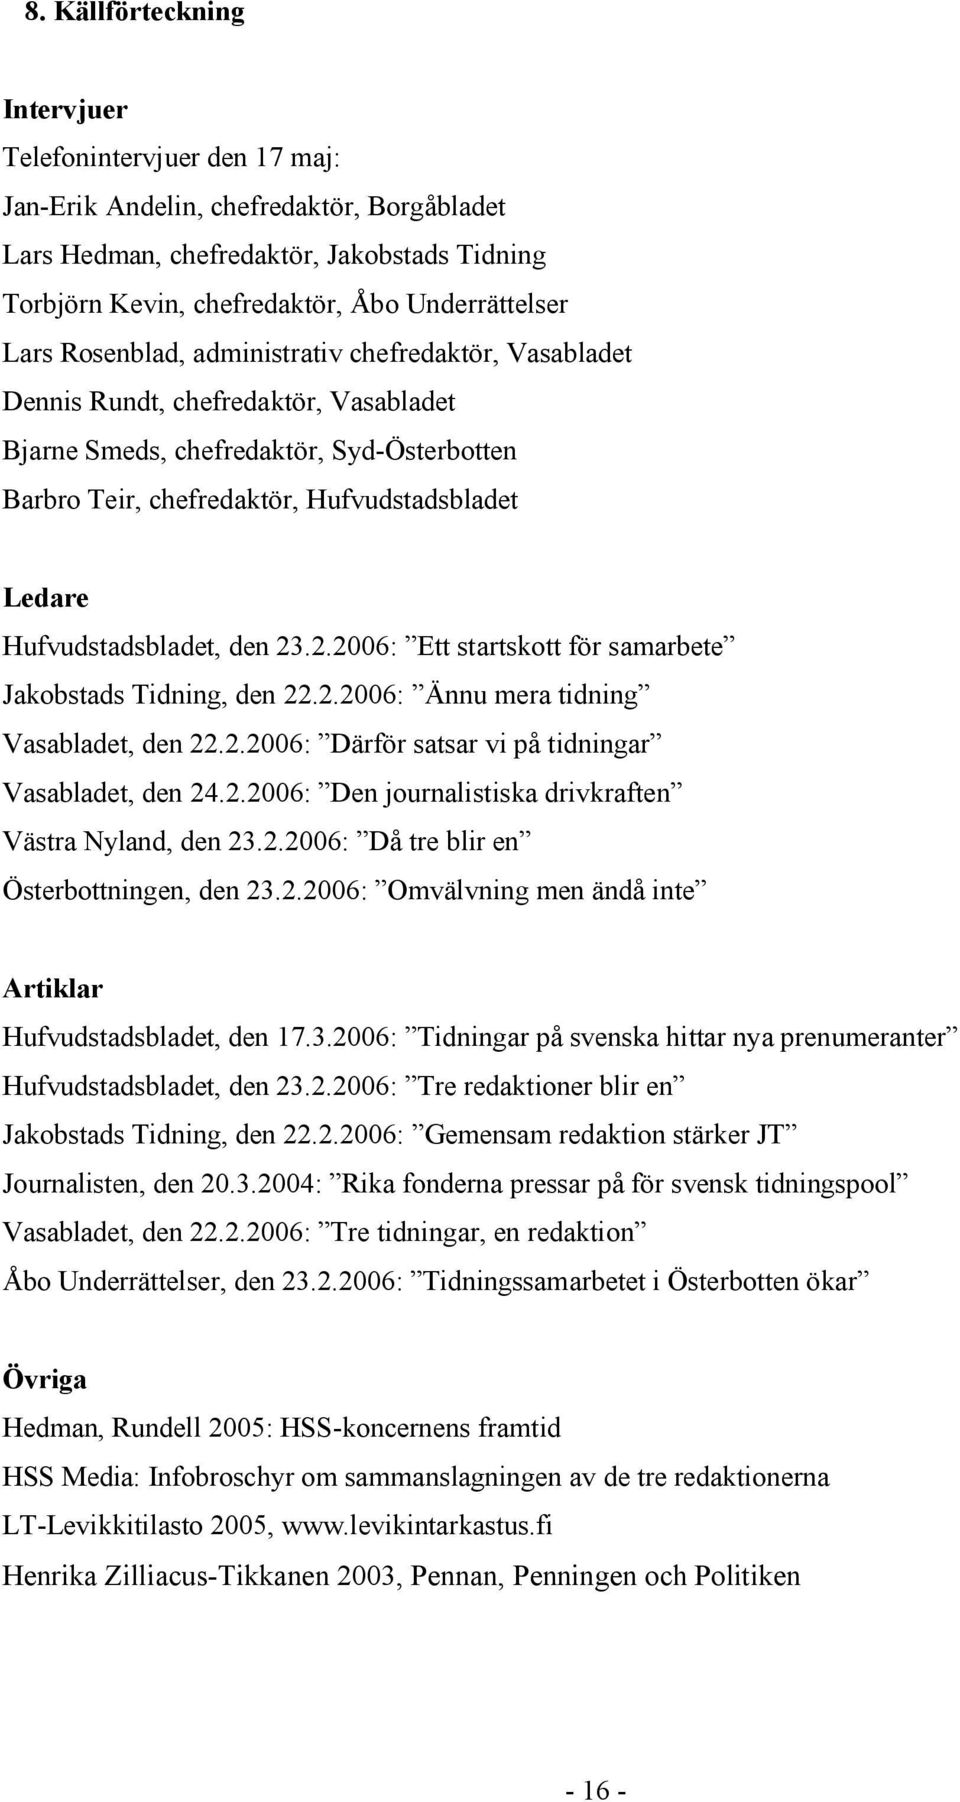 Hufvudstadsbladet, den 23.2.2006: Ett startskott för samarbete Jakobstads Tidning, den 22.2.2006: Ännu mera tidning Vasabladet, den 22.2.2006: Därför satsar vi på tidningar Vasabladet, den 24.2.2006: Den journalistiska drivkraften Västra Nyland, den 23.